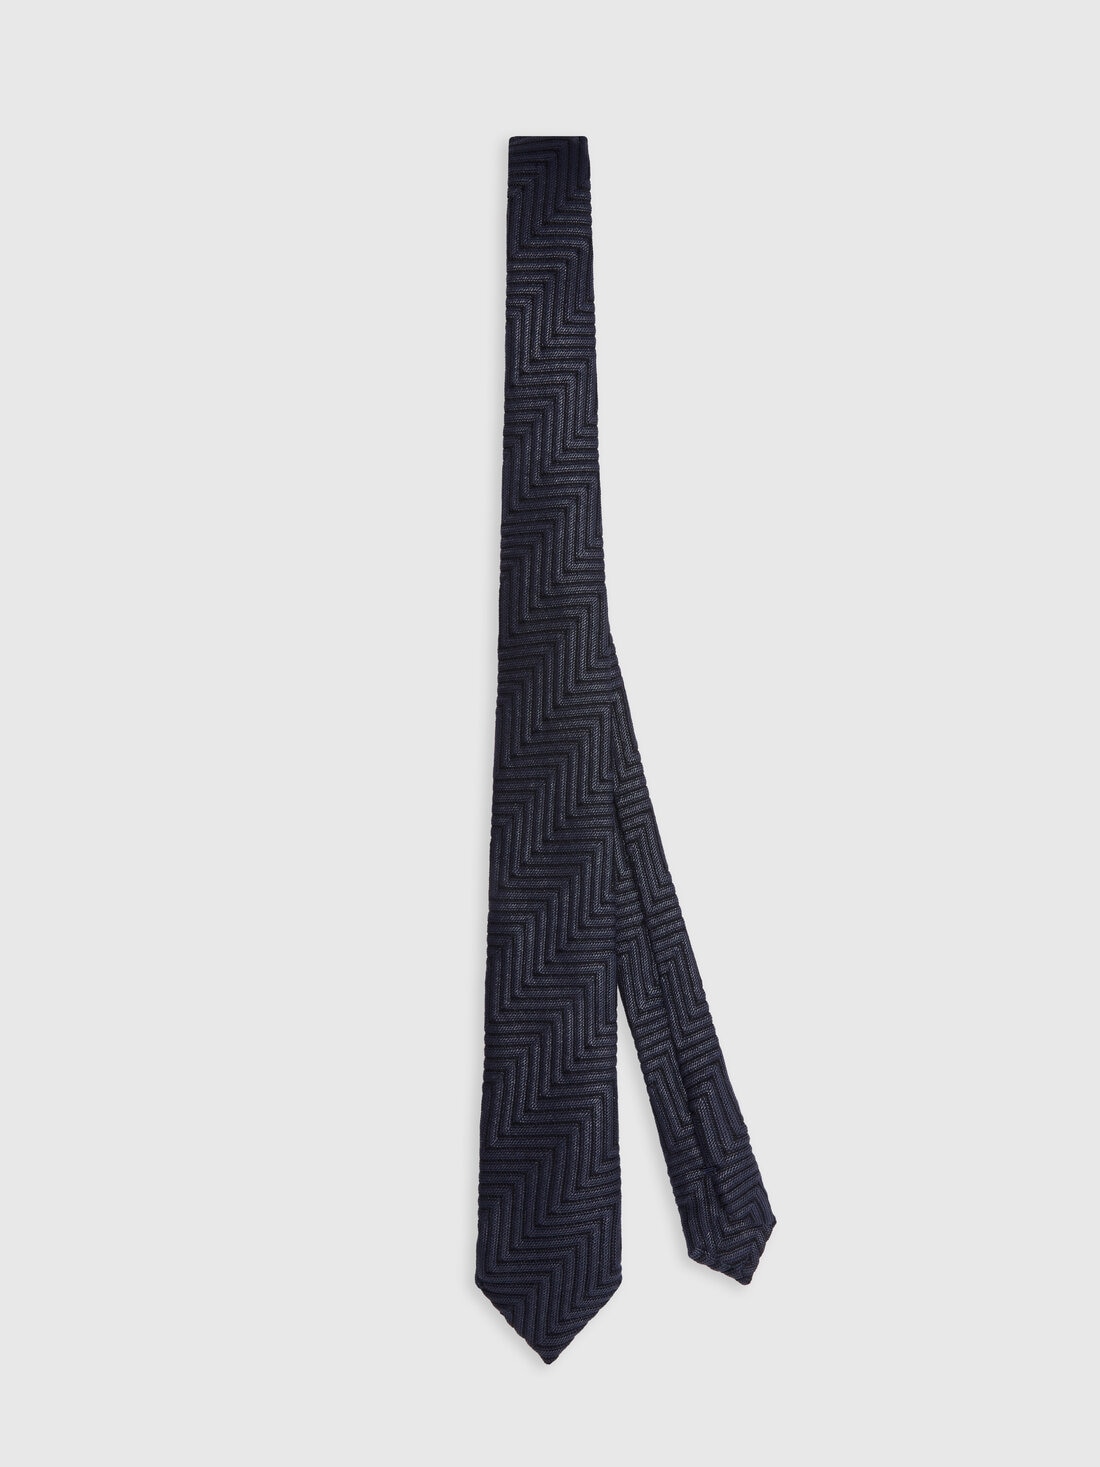 Cravatta in cotone e viscosa chevron, Multicolore  - 8053147141824 - 0